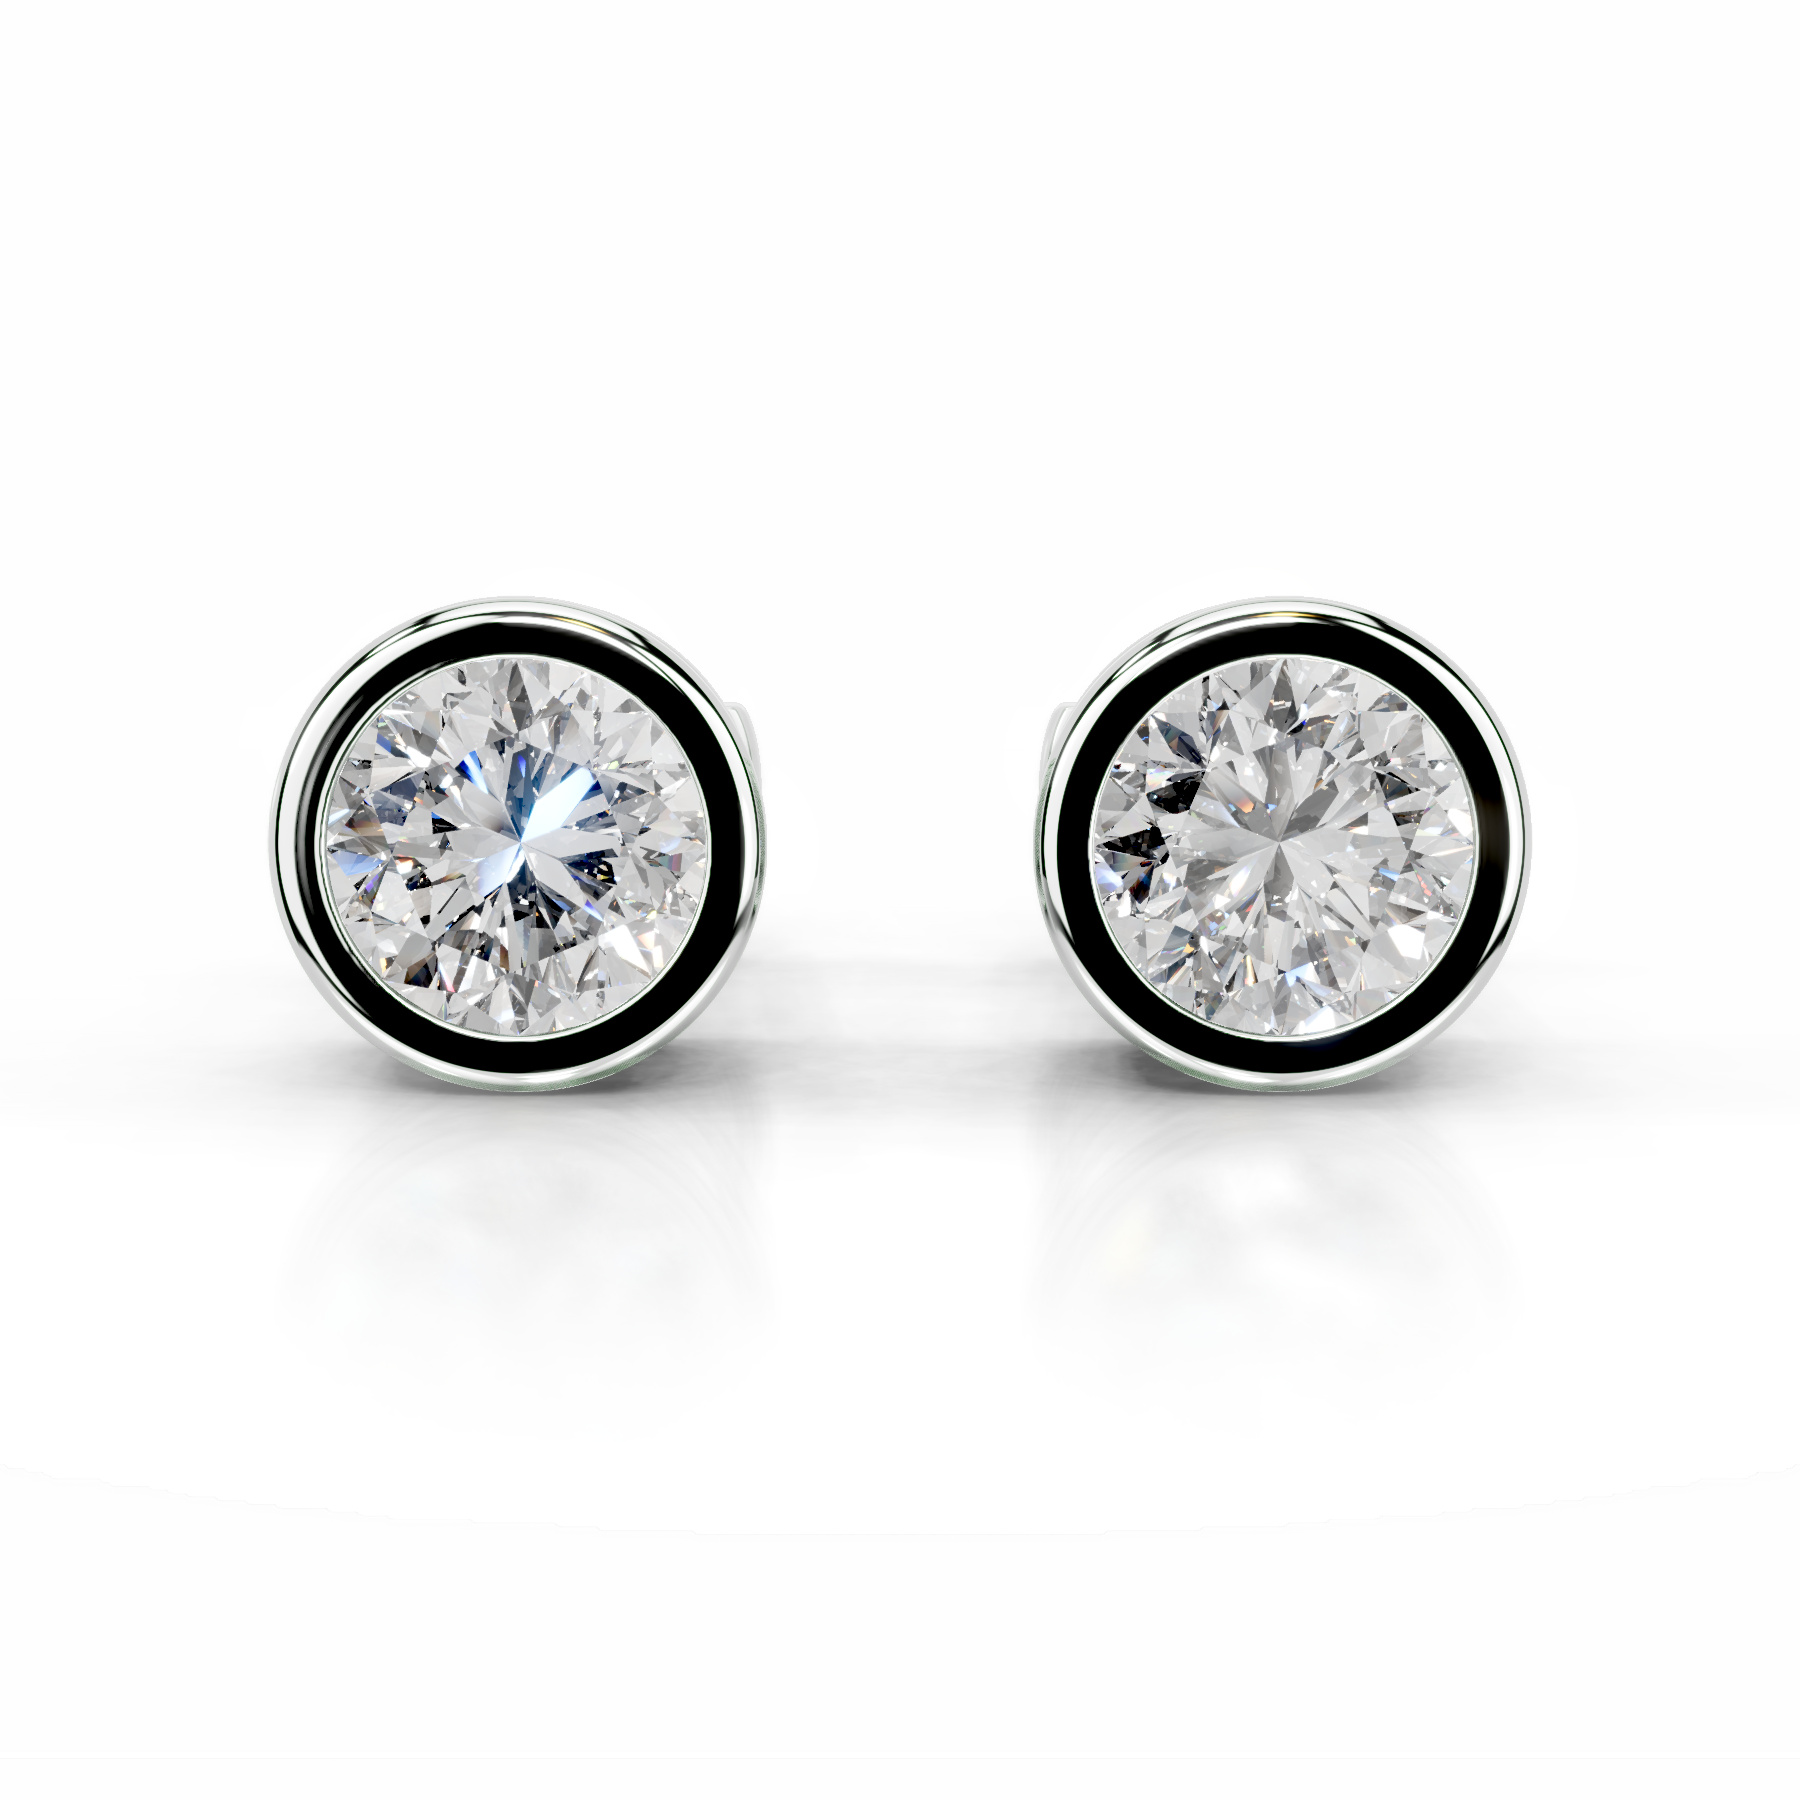 Amber Diamond Earrings   (3 Carat) -14K White Gold